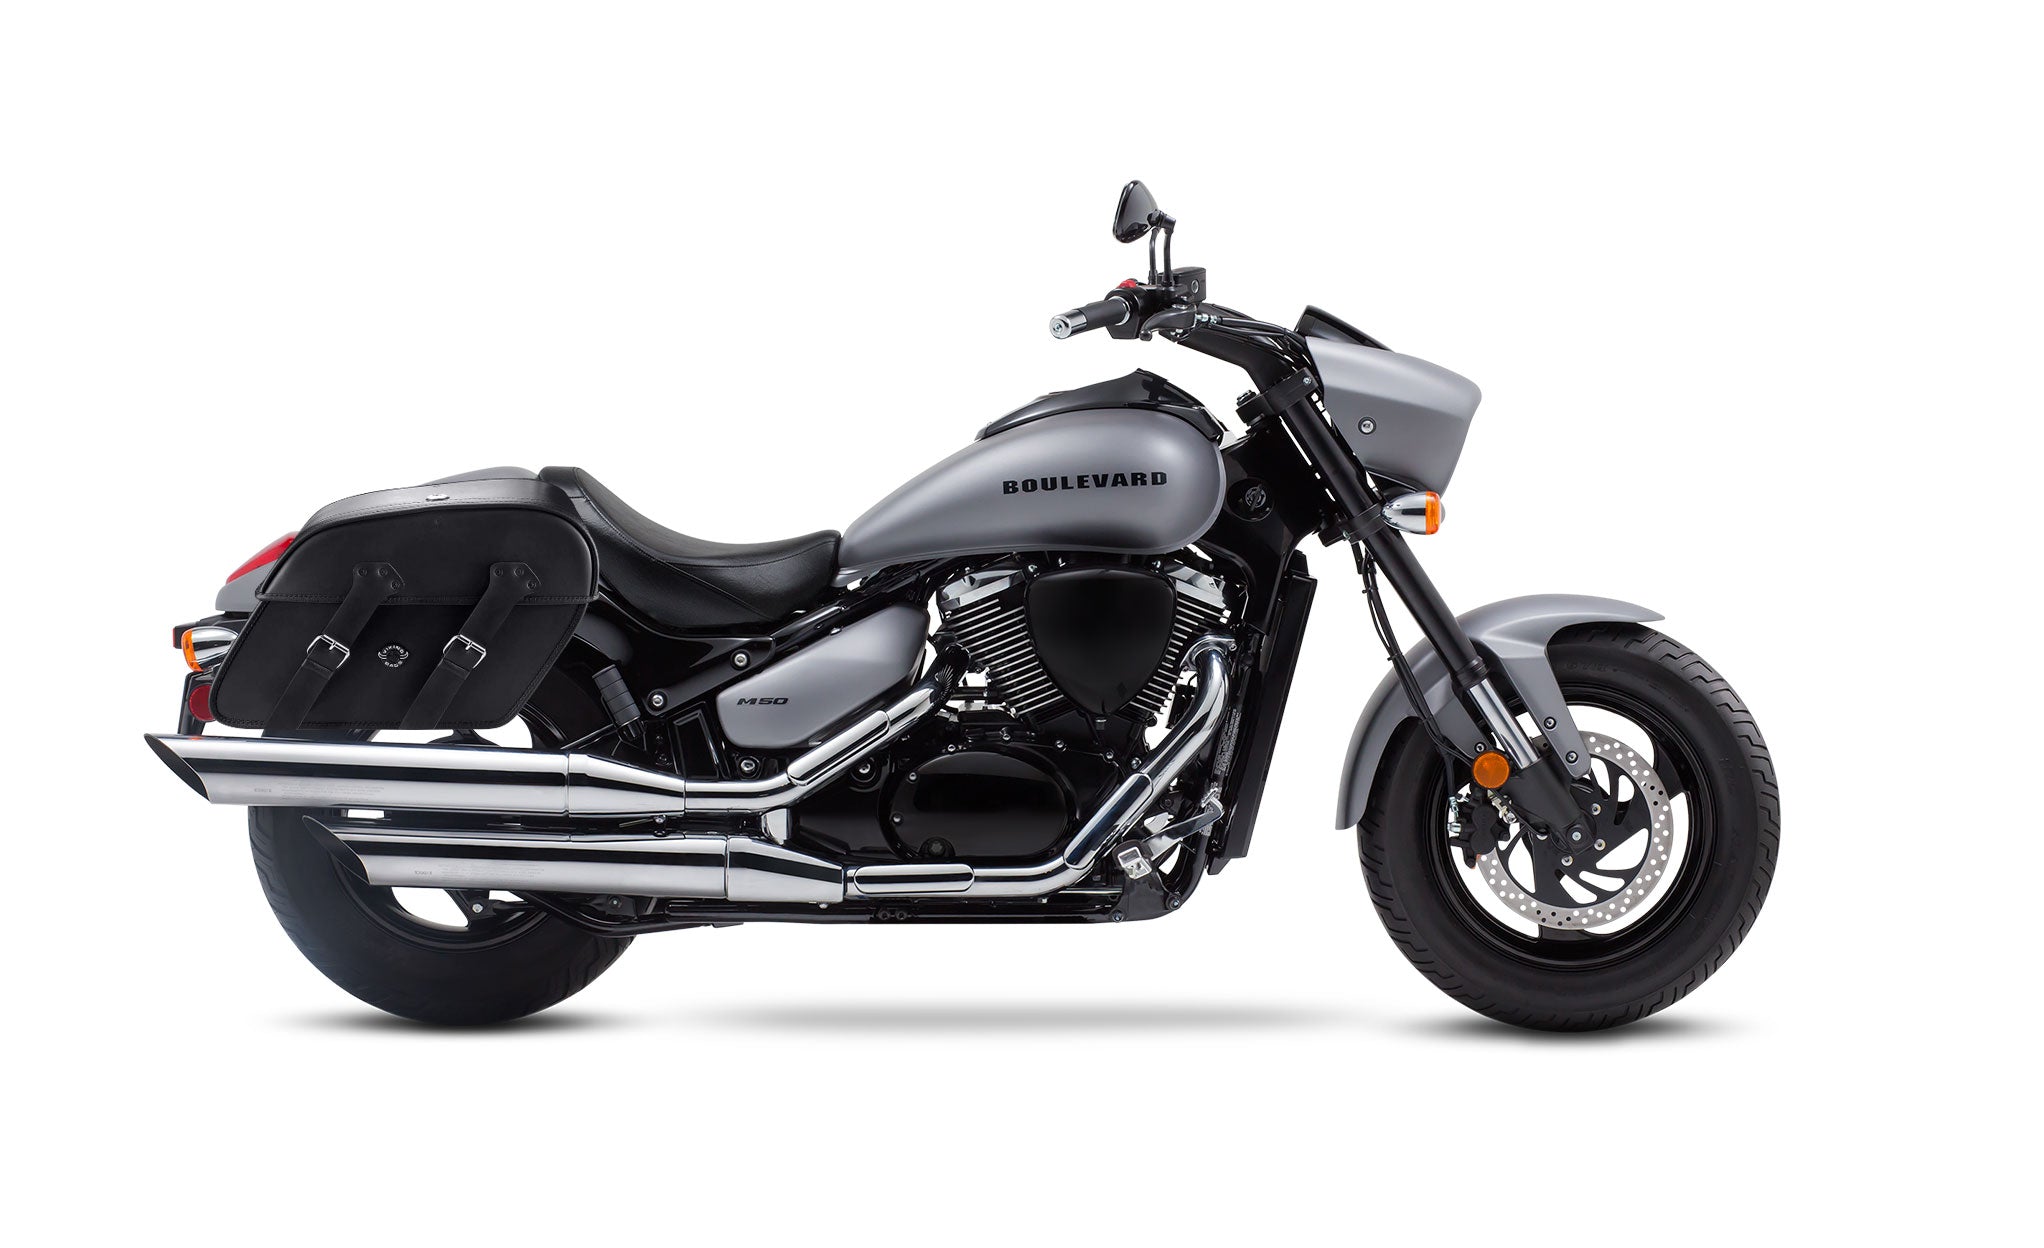 Viking Raven Extra Large Suzuki Boulevard M50 Vz800 Leather Motorcycle Saddlebags on Bike Photo @expand